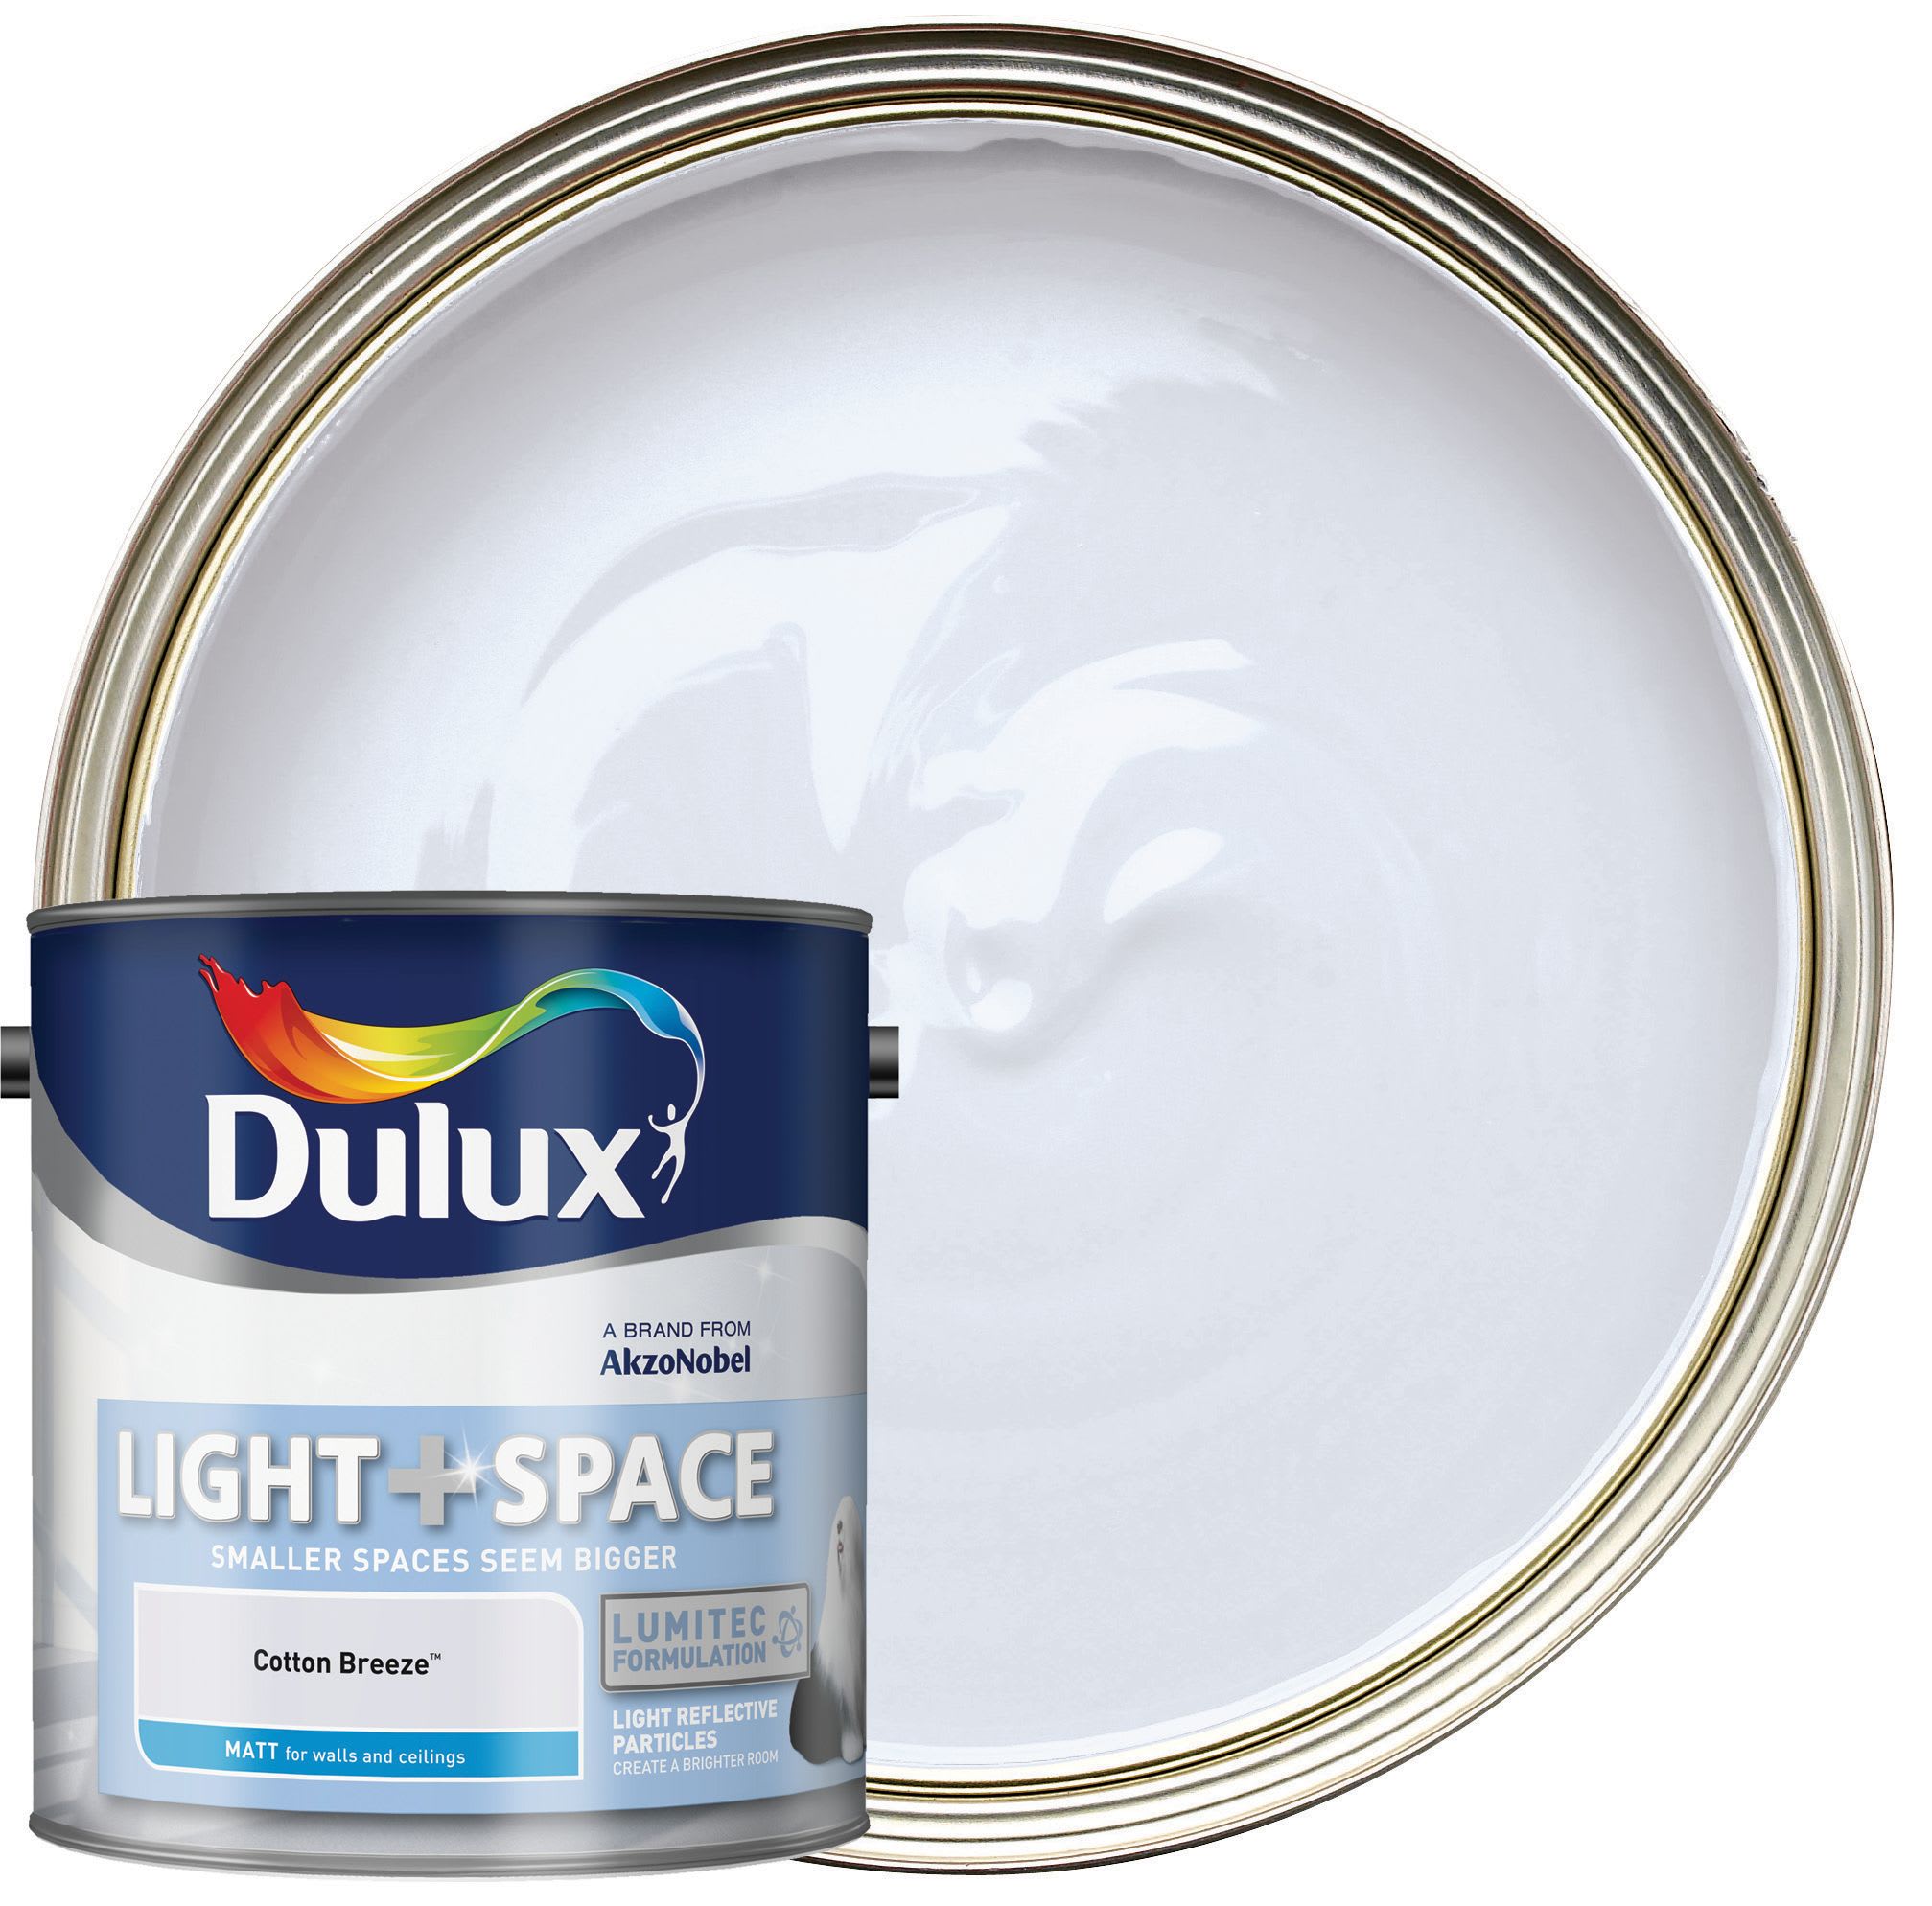 Dulux Light+ Space Matt Emulsion Paint - Cotton